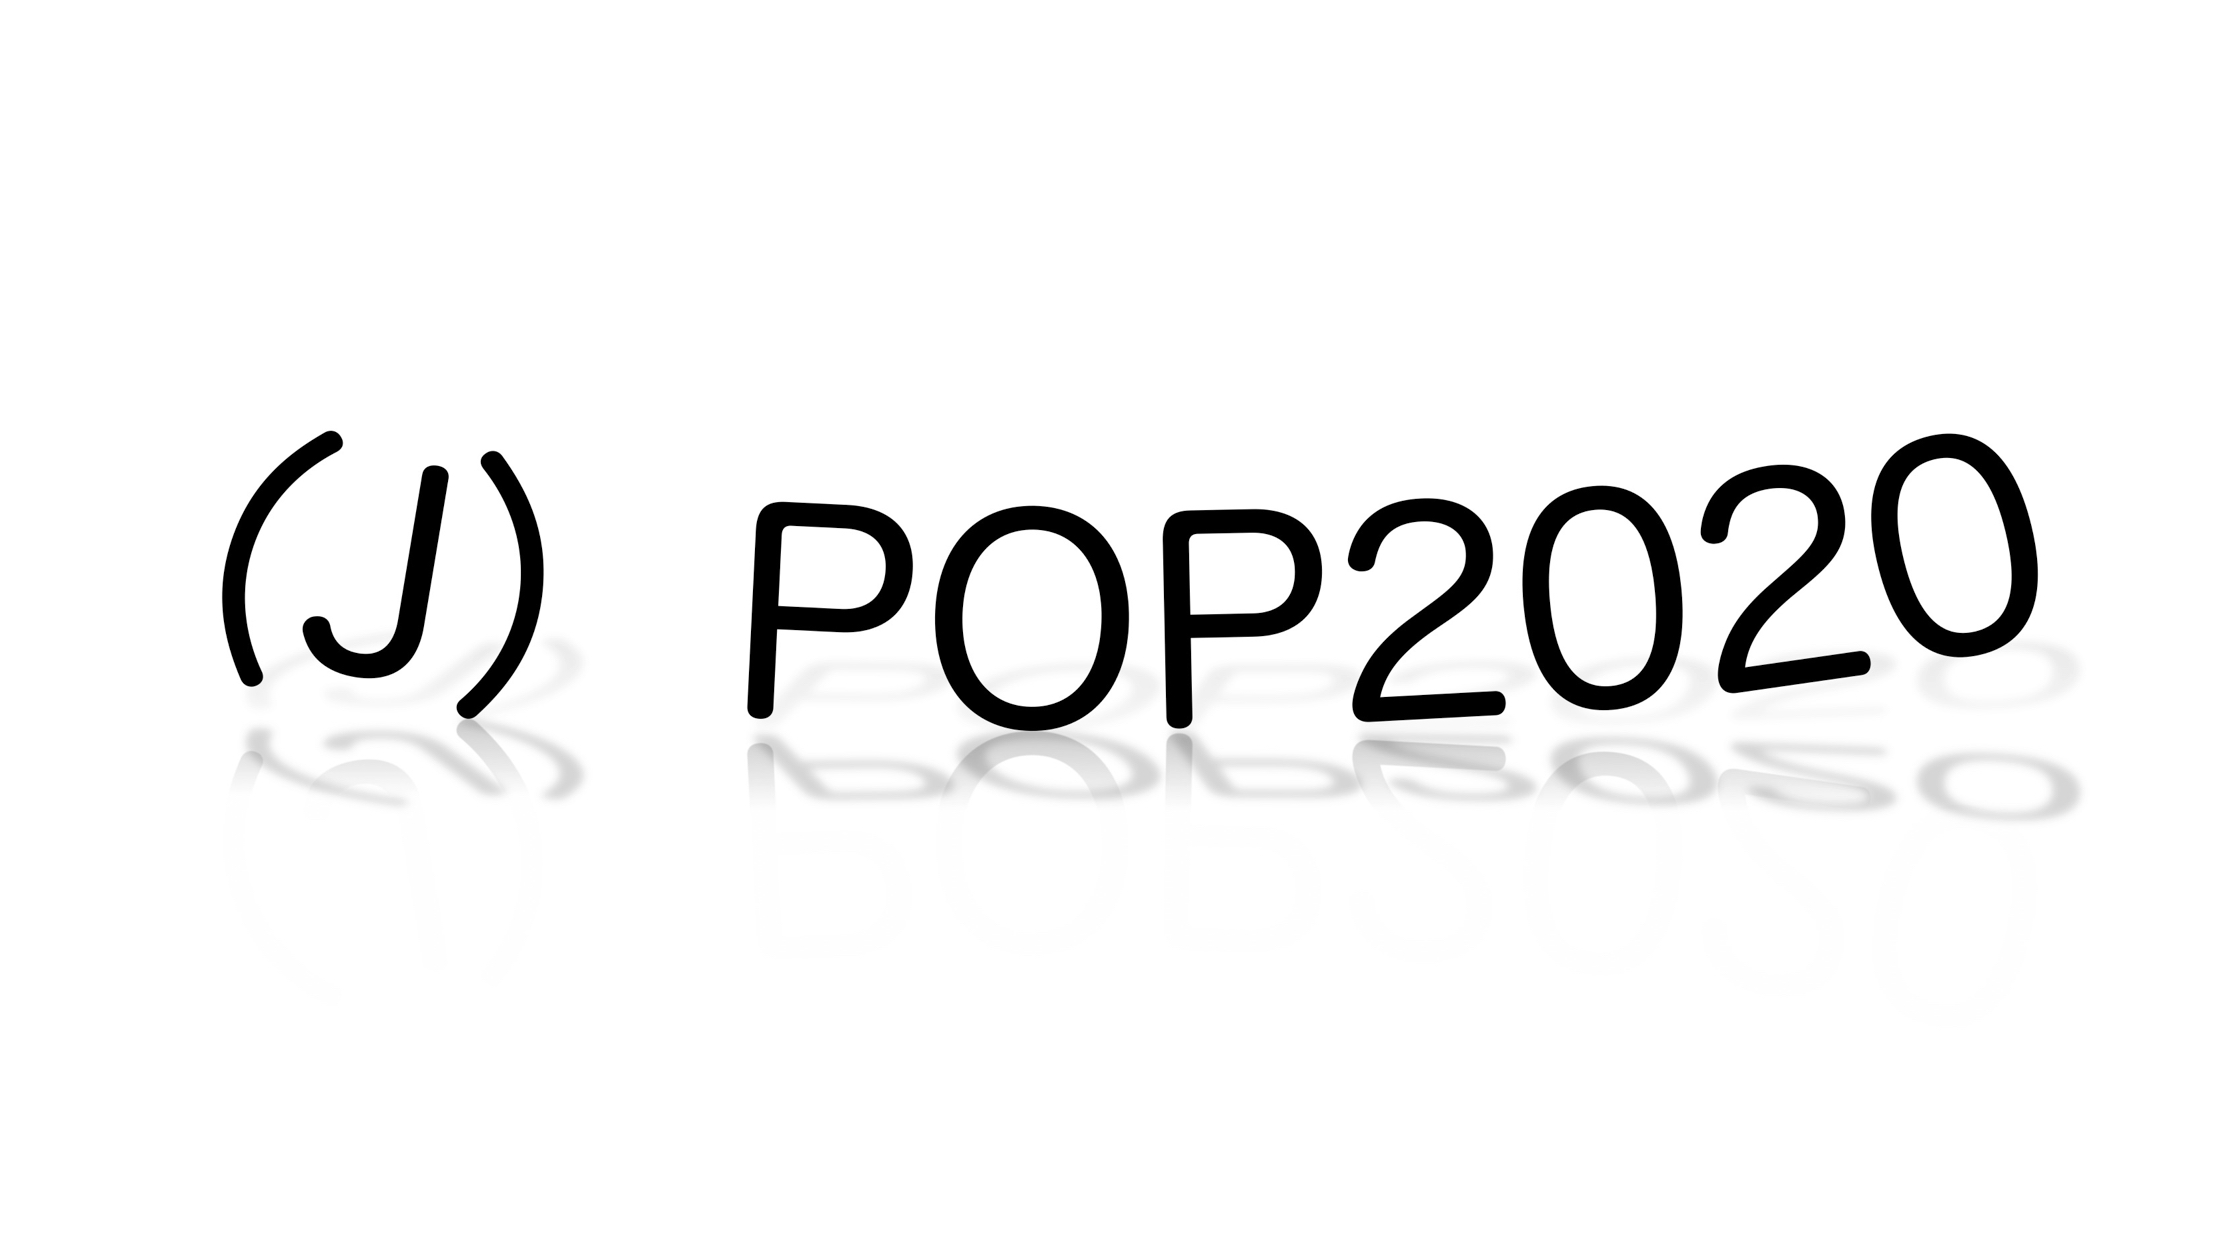 （J）POP2020